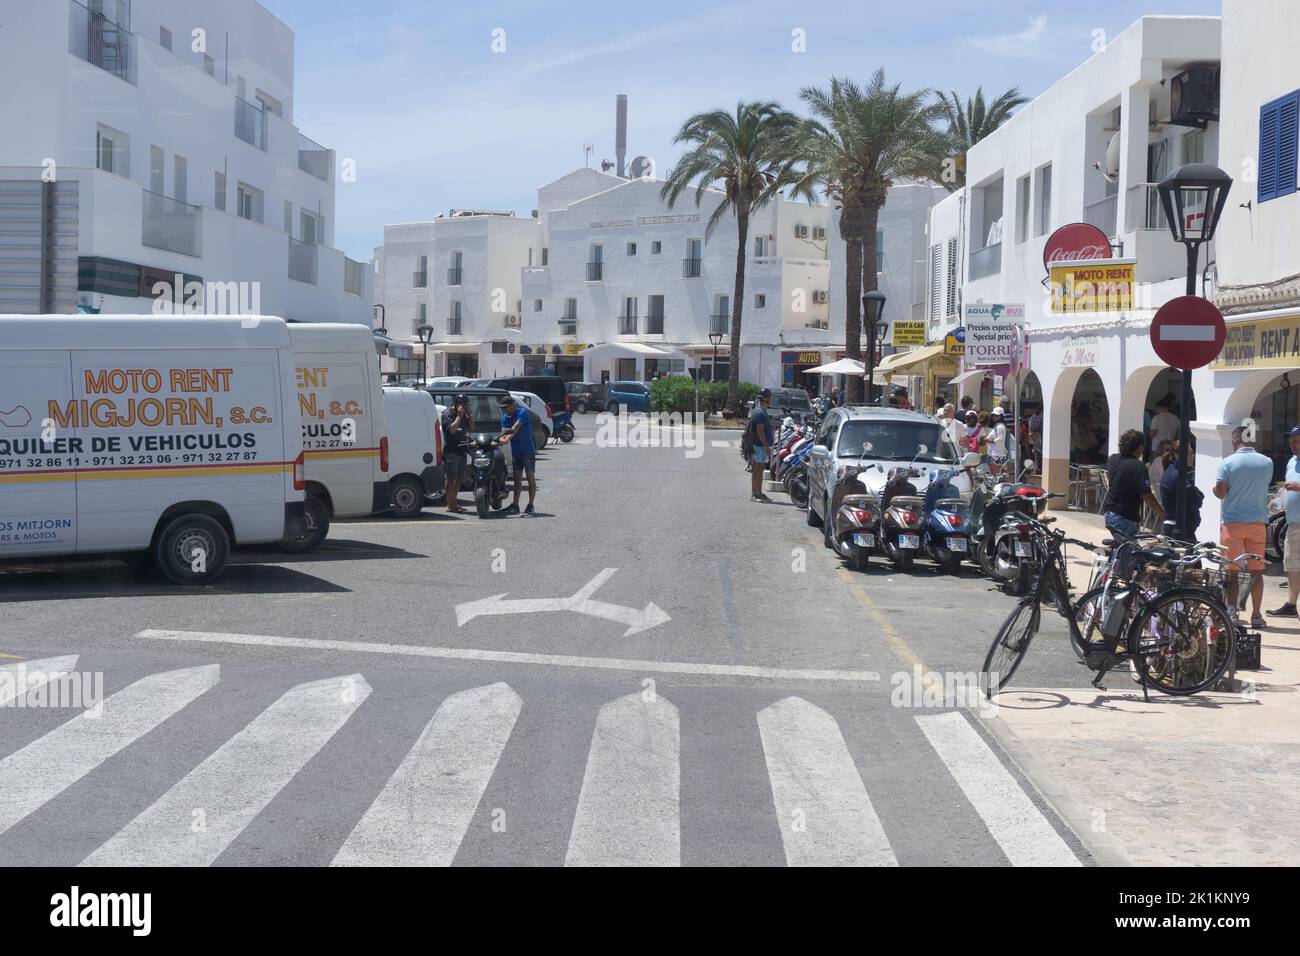 Die Straße, die Fahrzeuge, die Menschen und die weißen Gebäude der Insel Formentera unter dem blauen Himmel Stockfoto